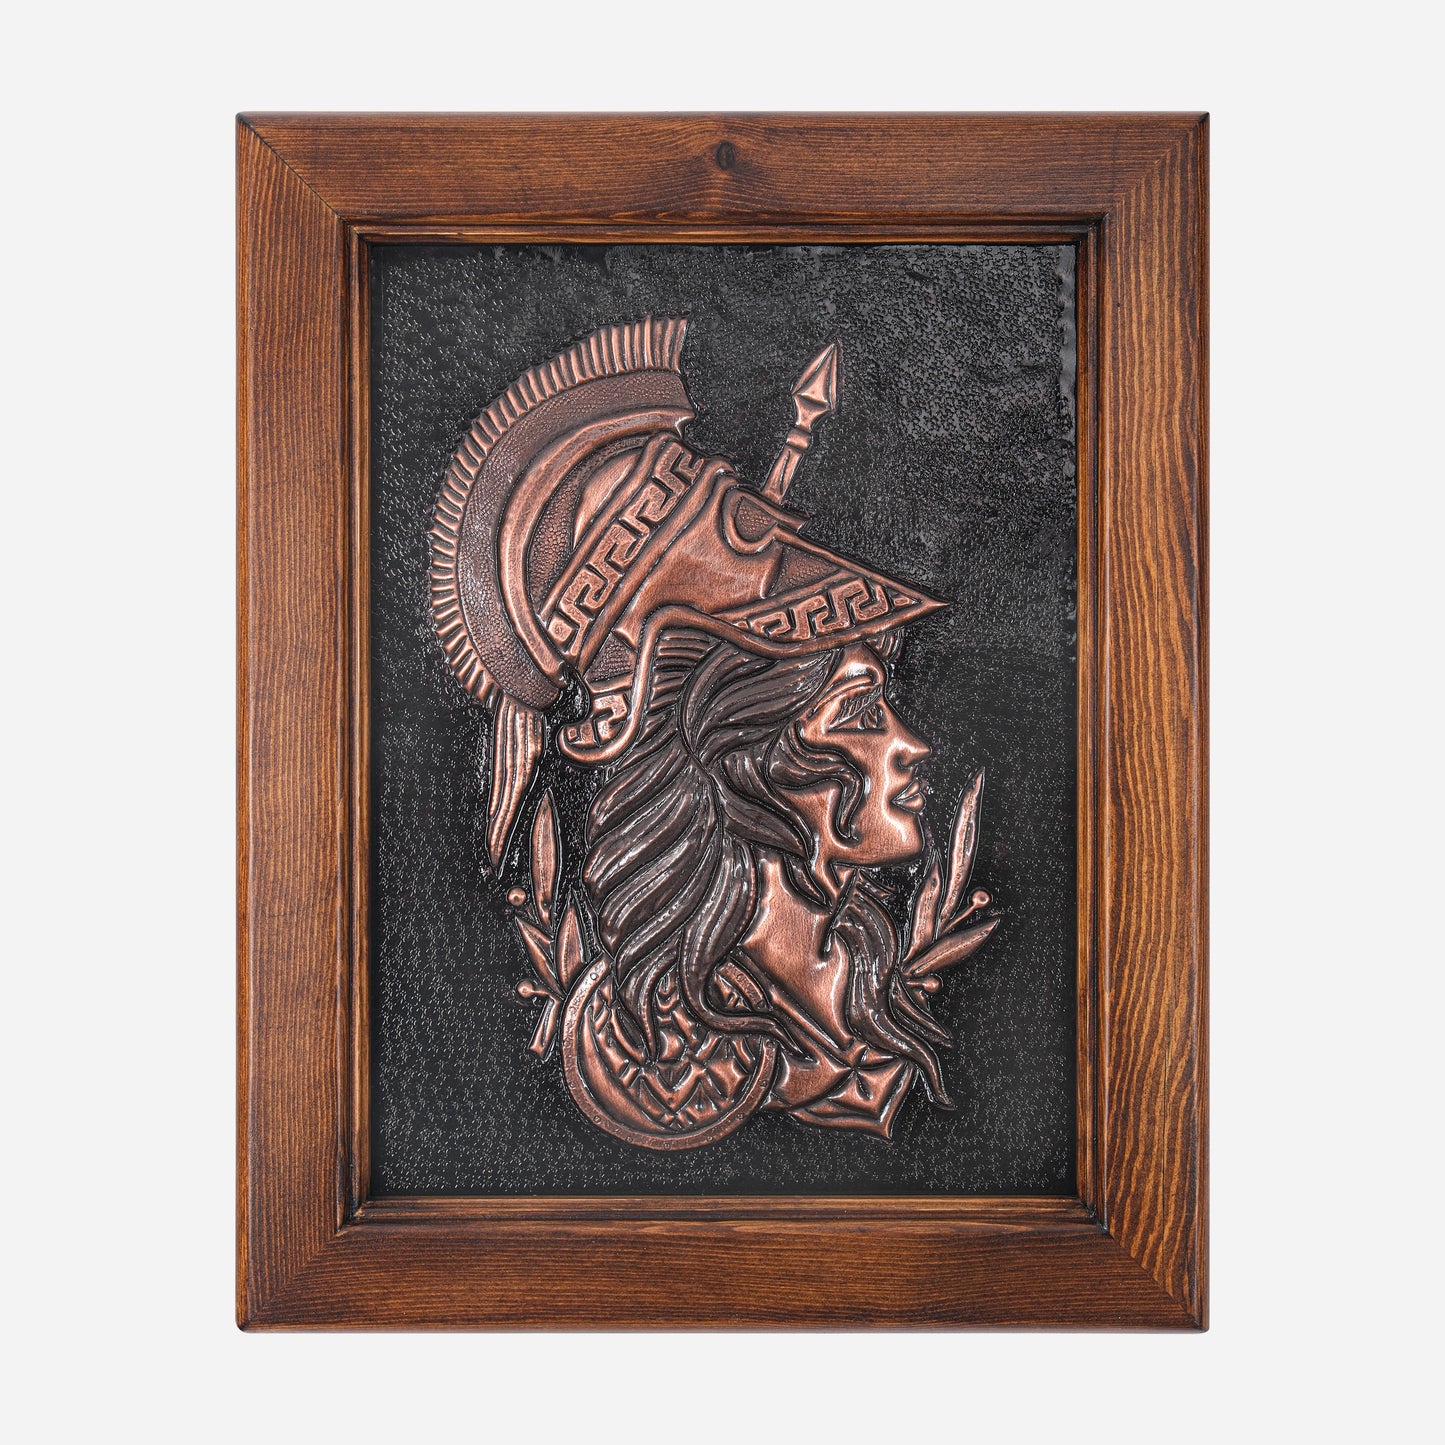 Framed Copper Artwork (Goddess of Wisdom, Athena)